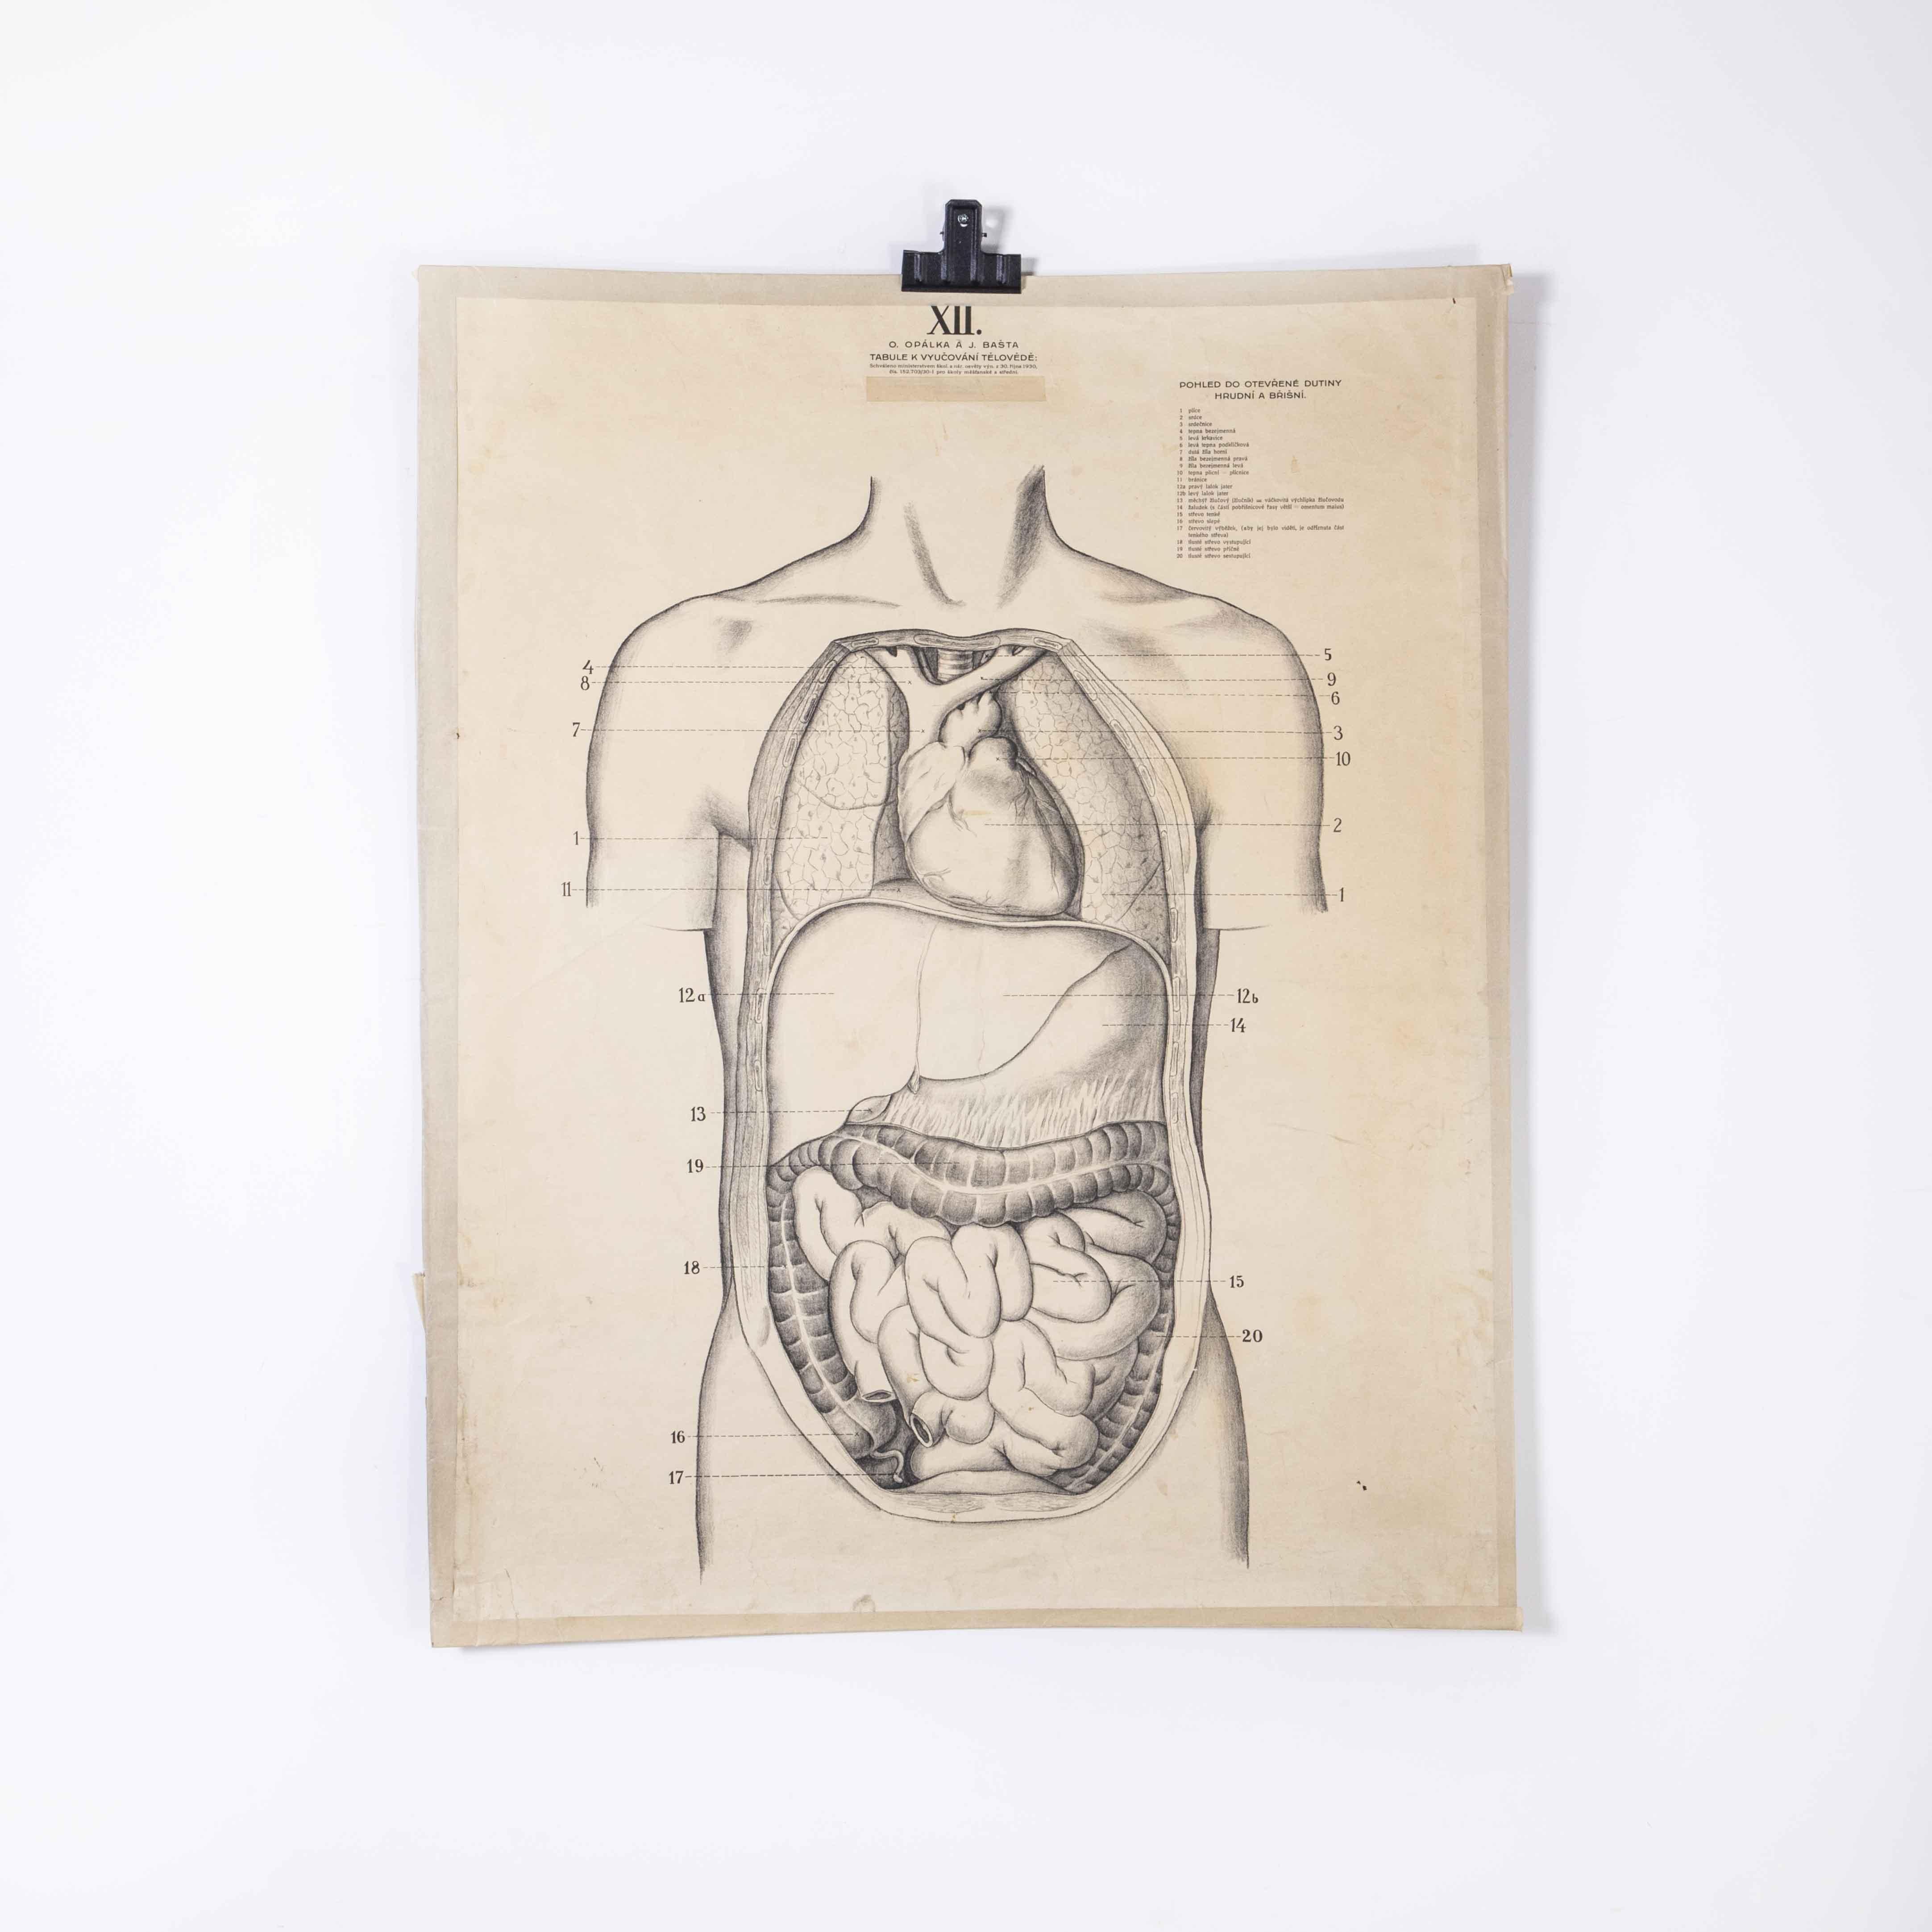 1930er Jahre Bildungsposter - Innere Organe der menschlichen Anatomie
1930's Educational Poster - Human Anatomy Internal Organs. Tschechoslowakische Lehrtafel aus dem frühen 20. Jahrhundert. Eine seltene und alte Wandtafel aus der Tschechischen